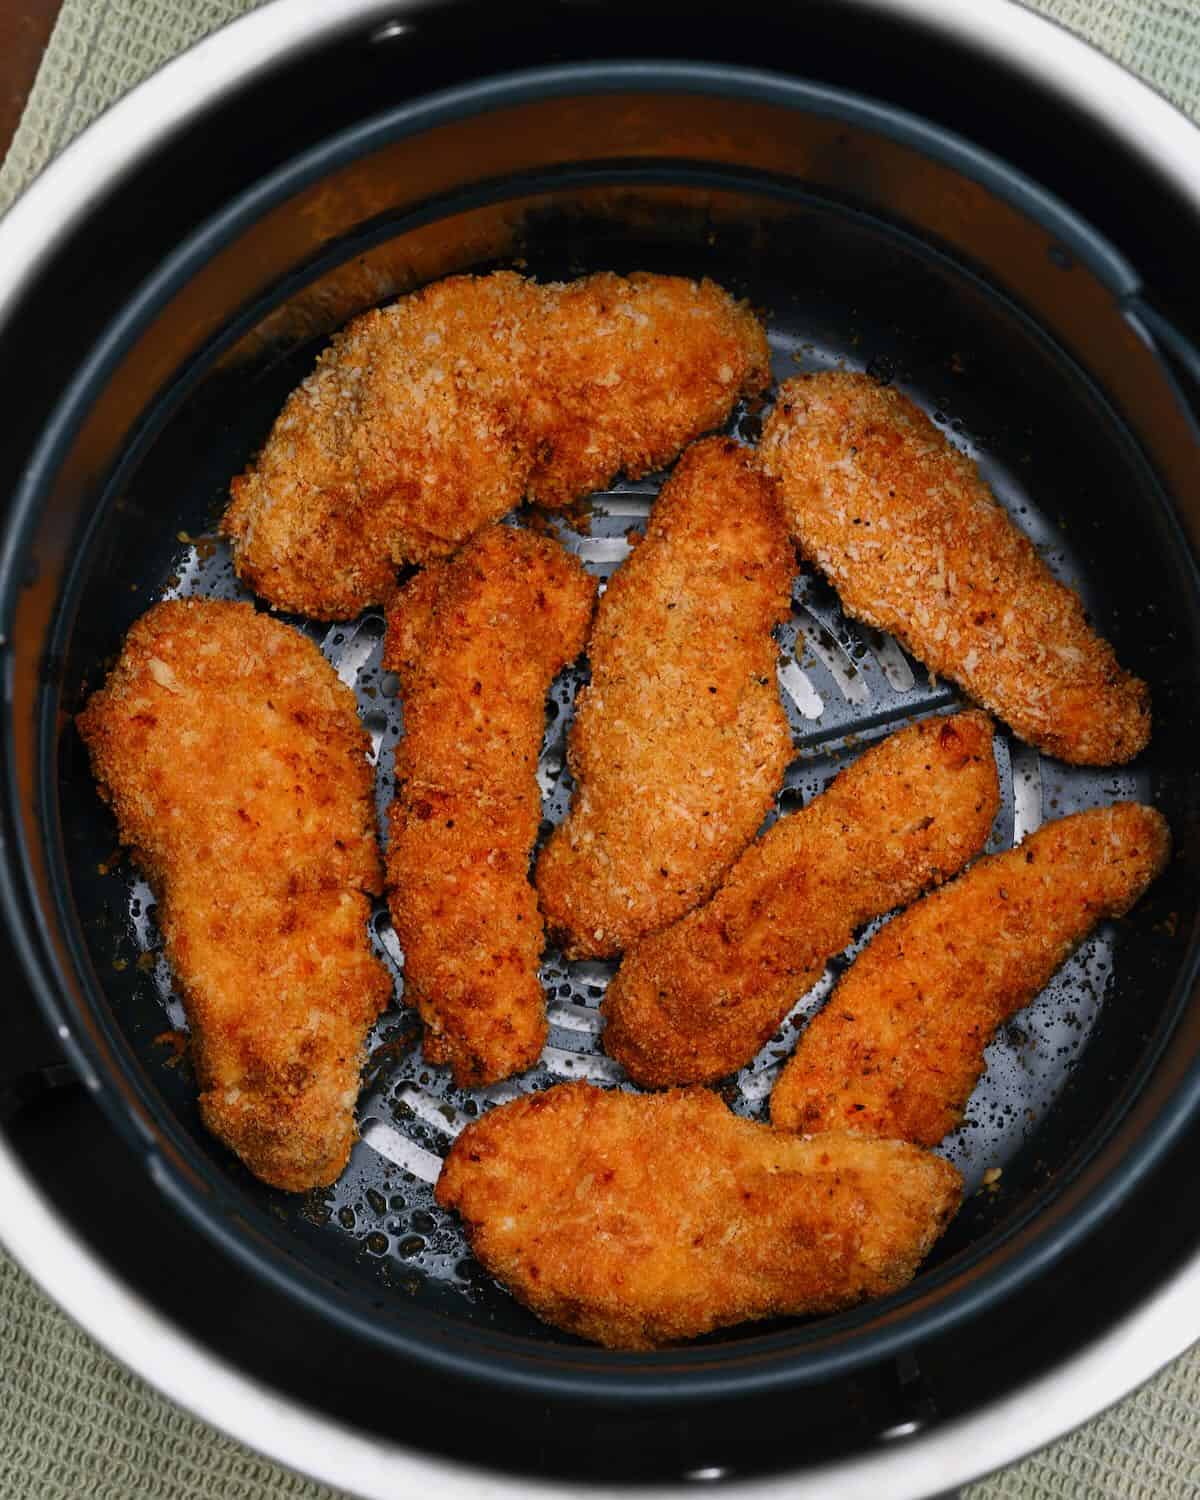 Freshly cooked chicken tenders in an air fryer